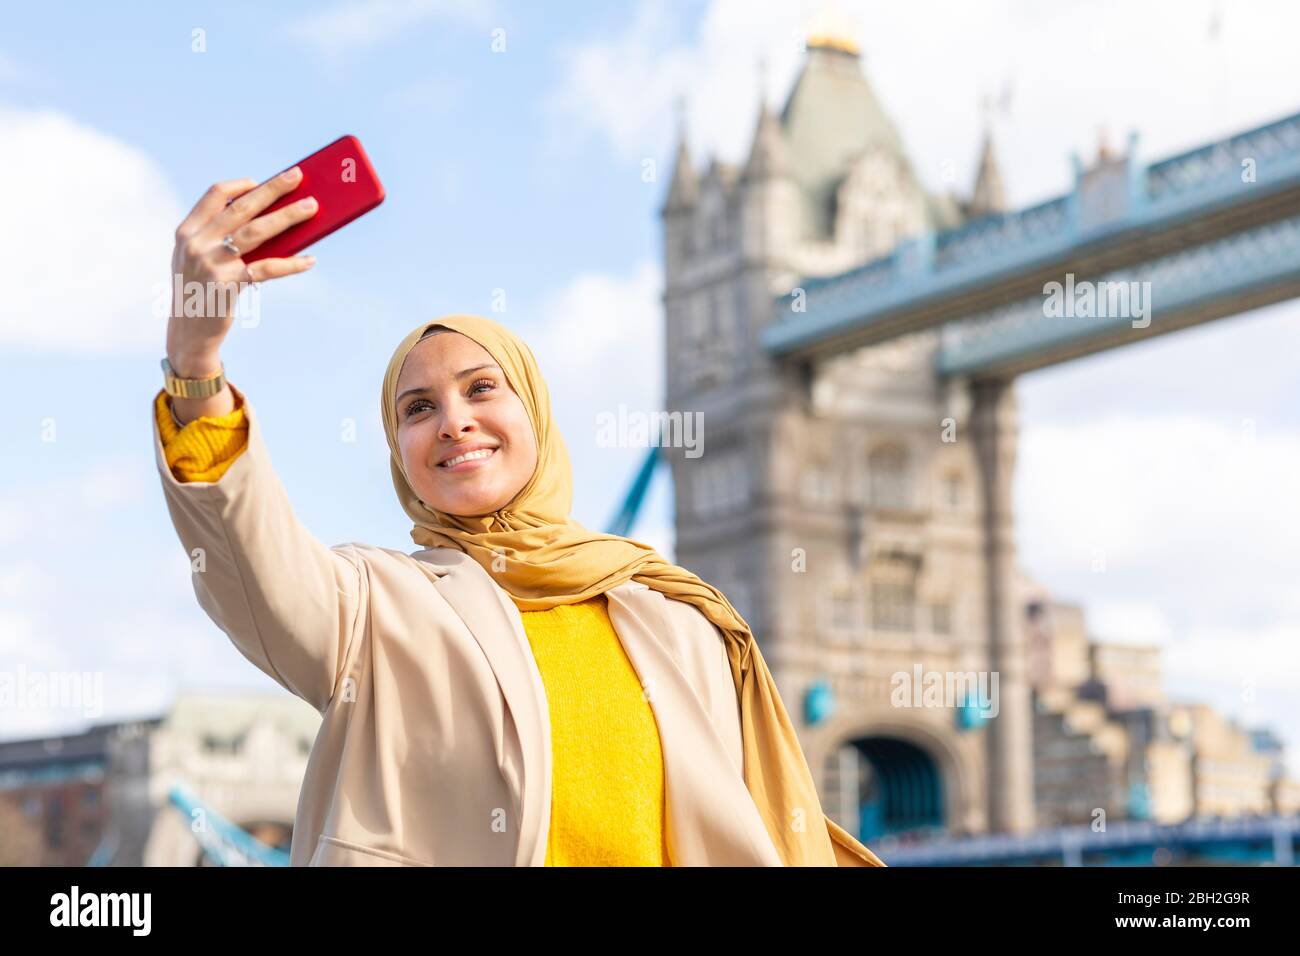 Porträt einer lächelnden jungen Frau, die mit dem Smartphone vor der Tower Bridge, London, UK, Selfie macht Stockfoto